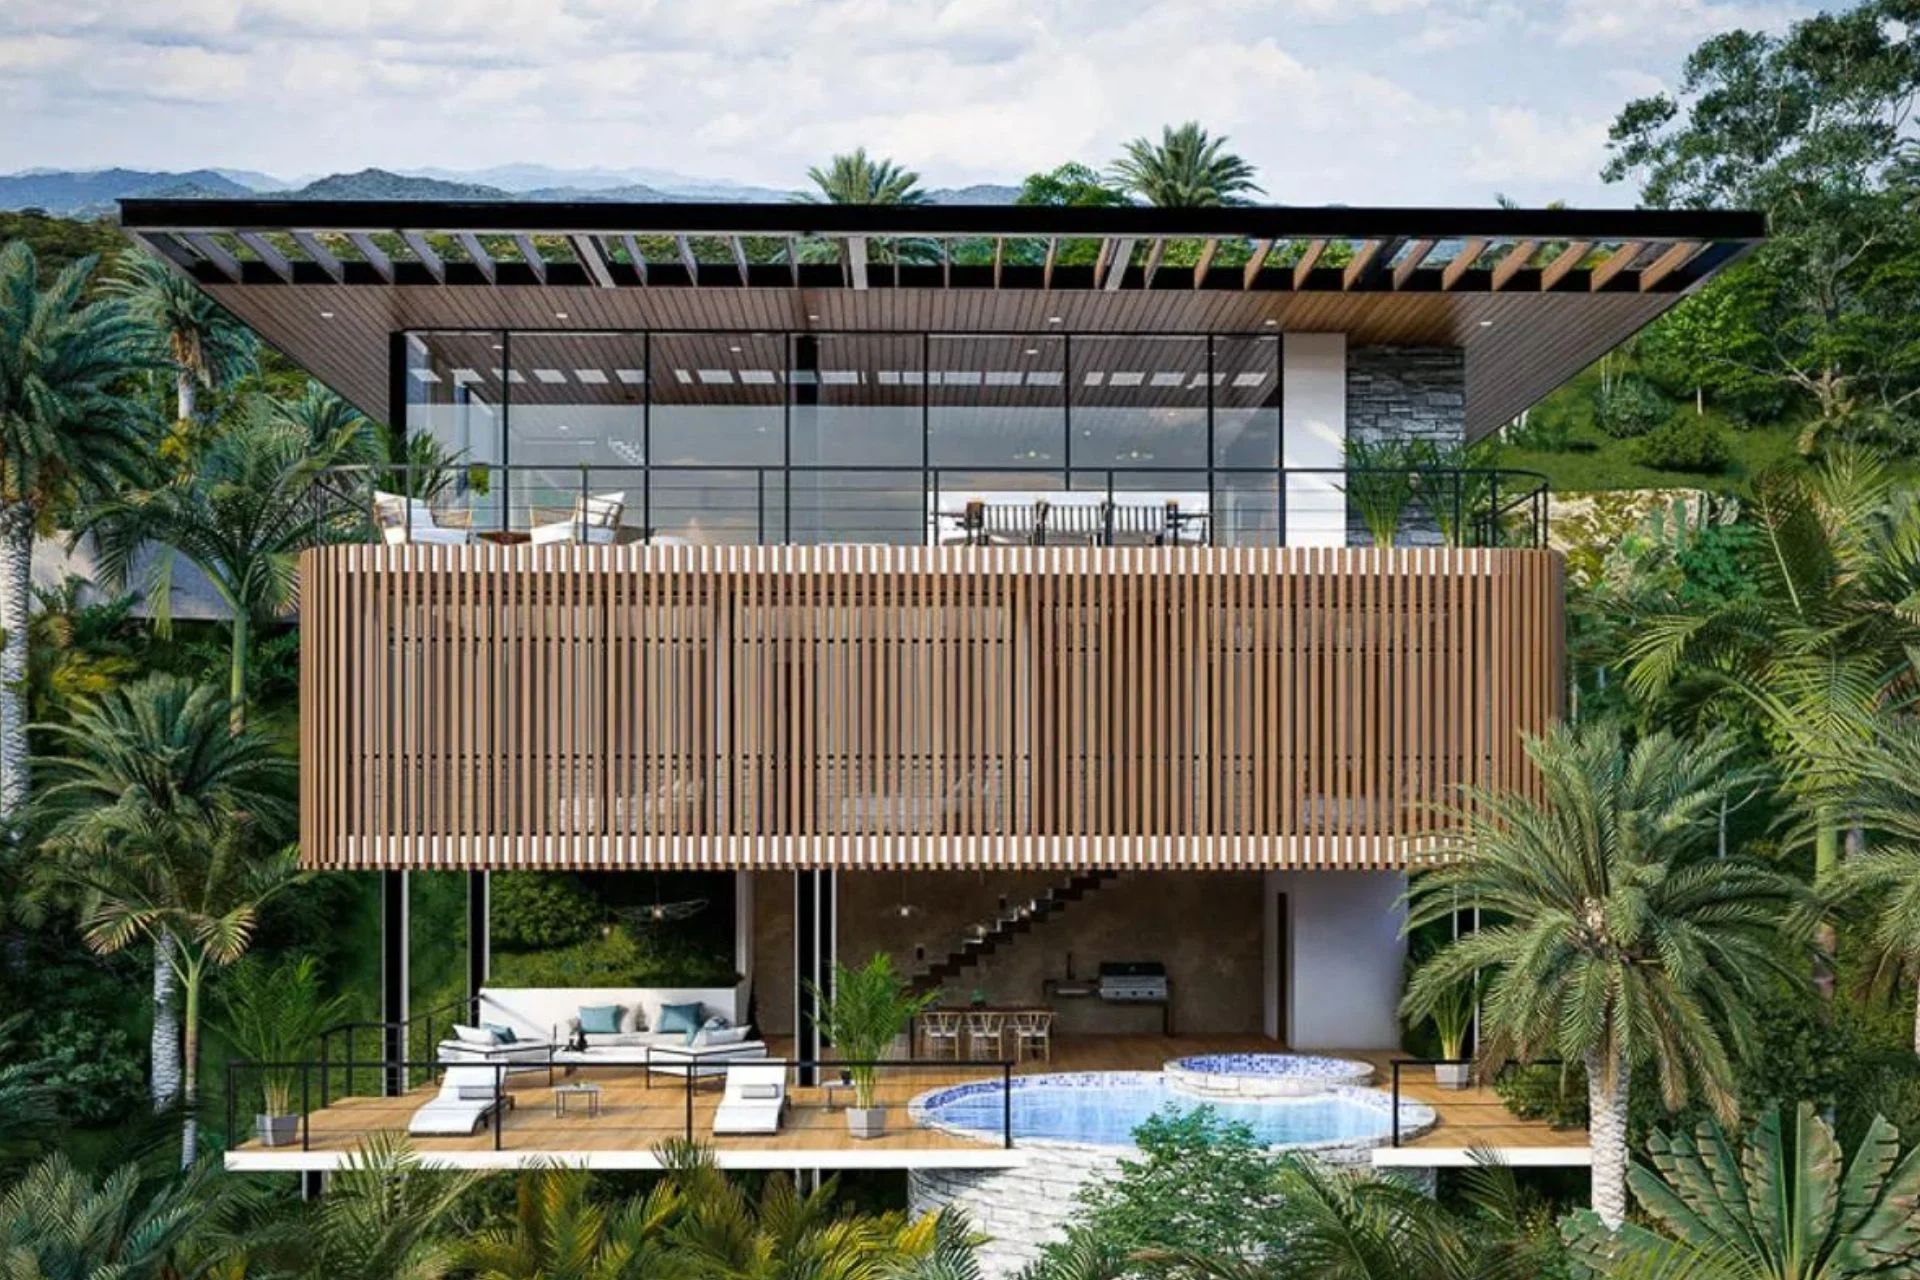 Contemporary luxury villa in Costa Rica